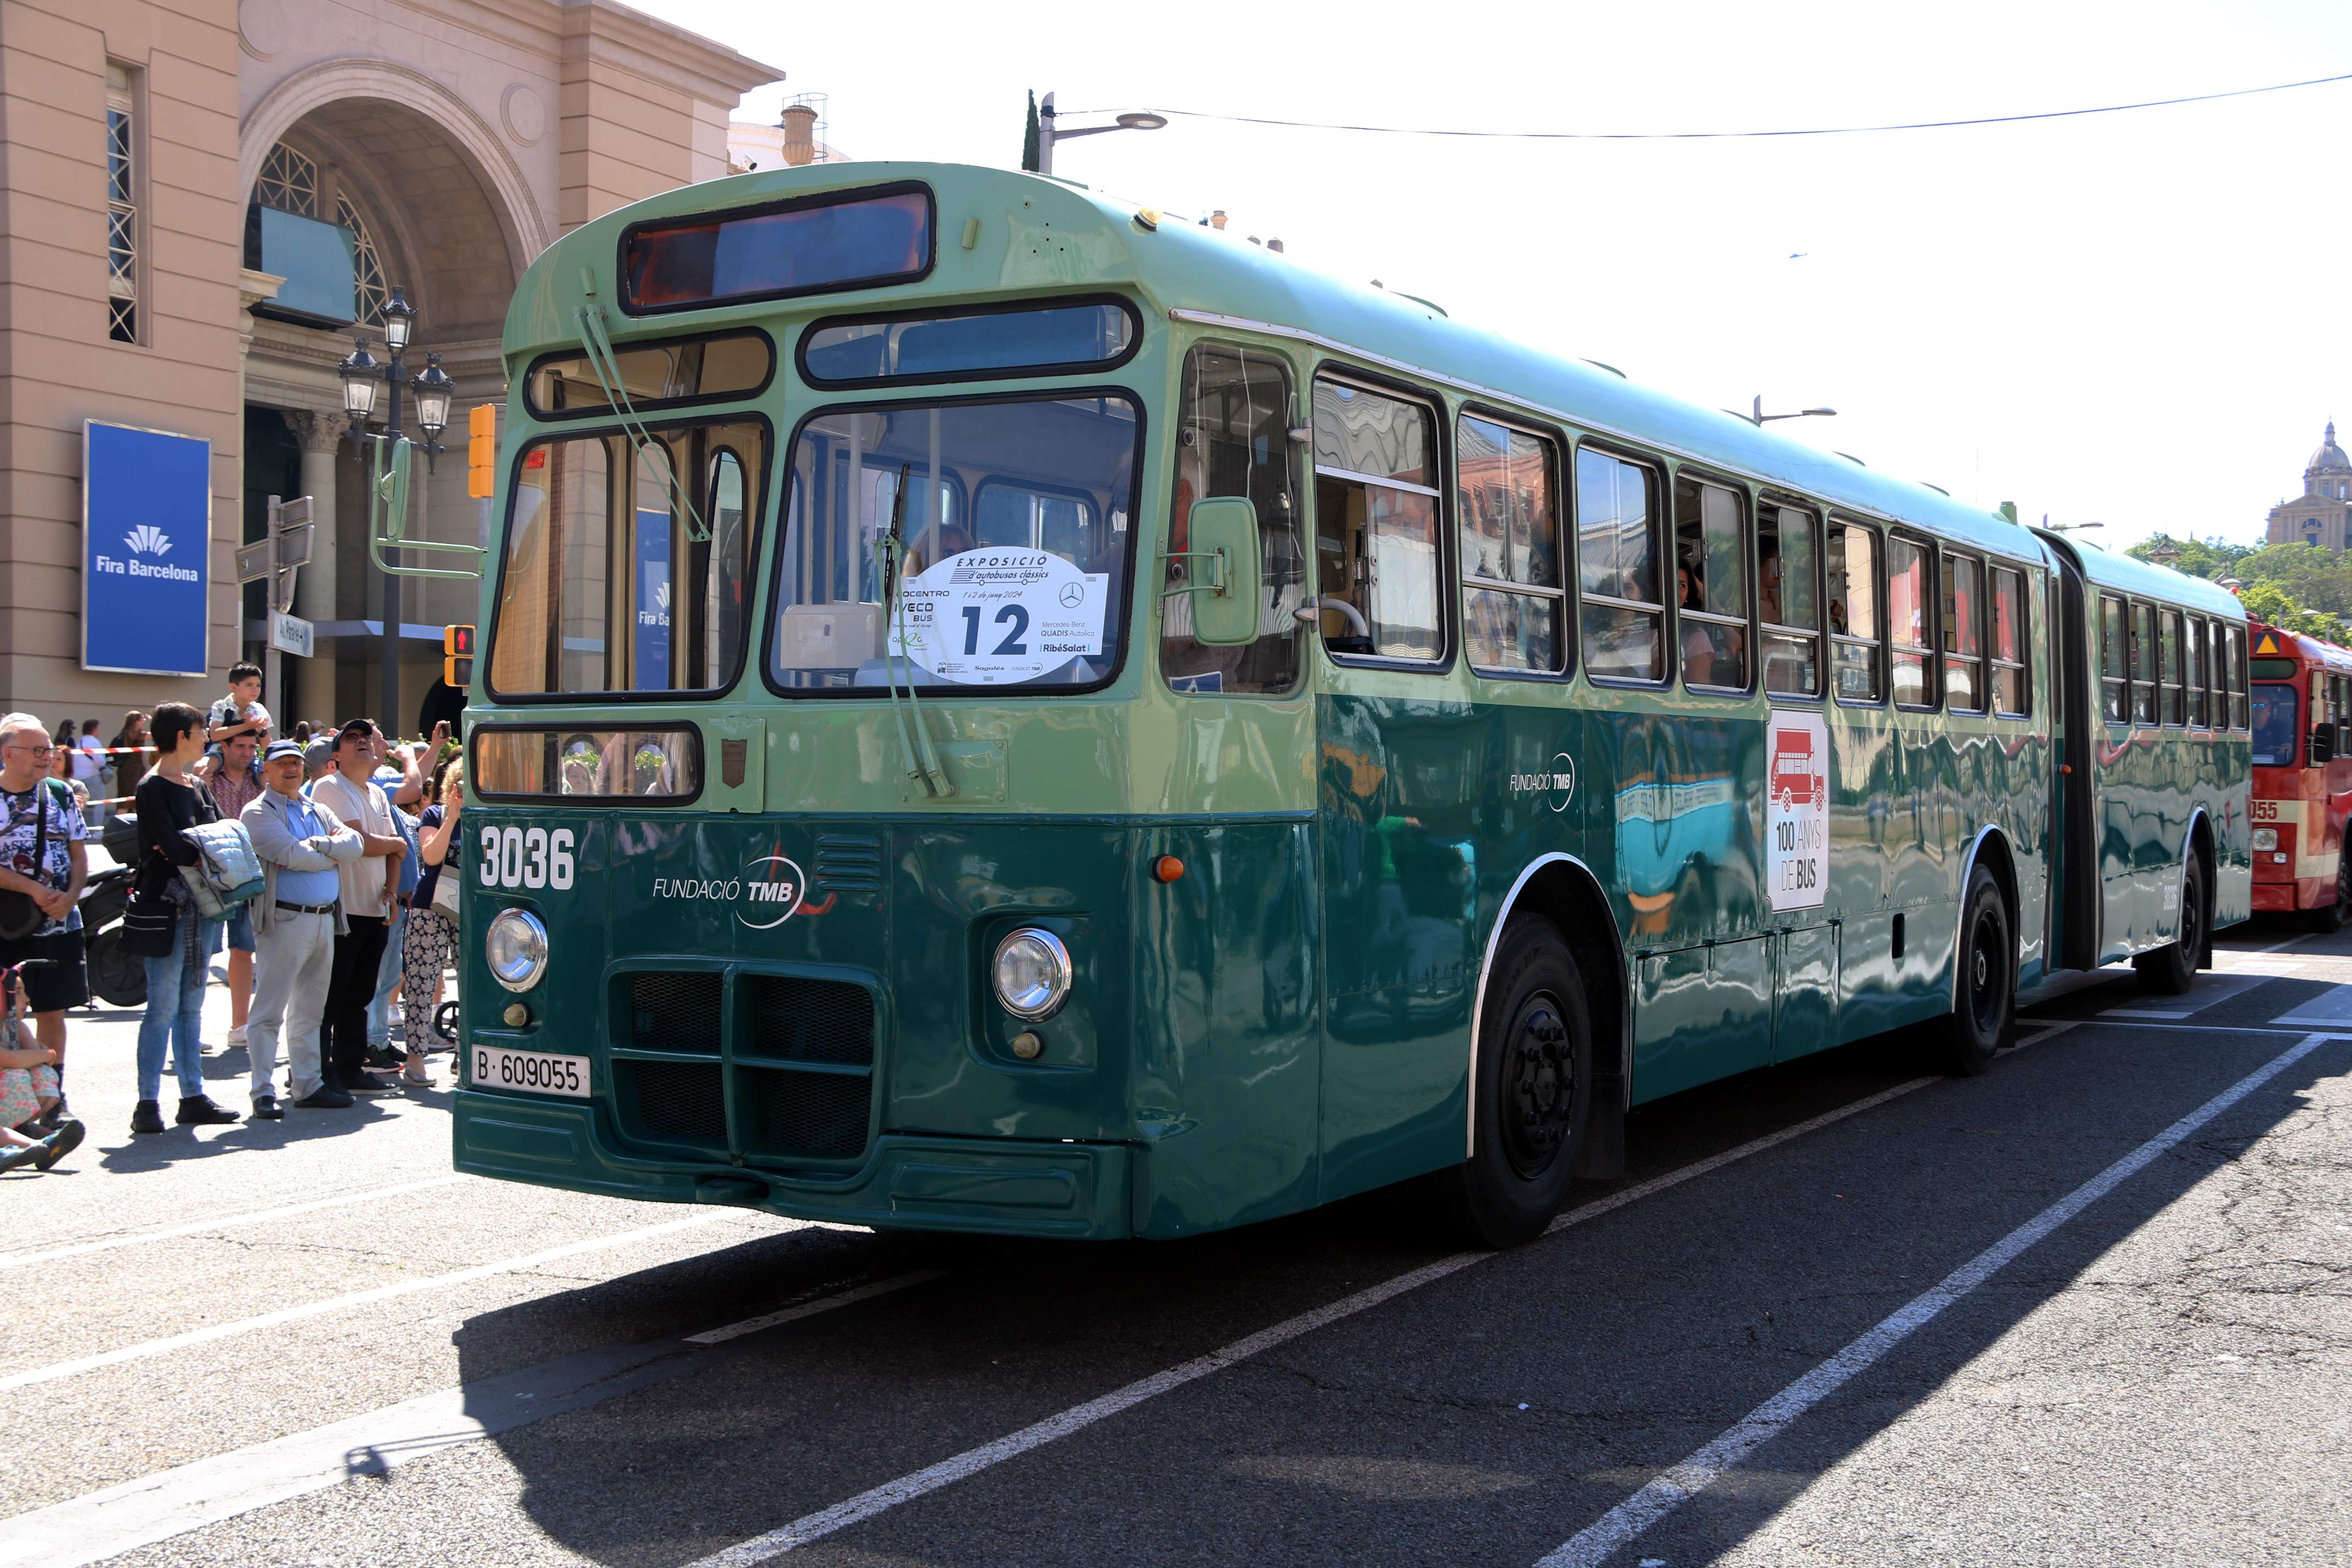 Autobuses clásicos desfilan por las calles de Barcelona para divulgar el patrimonio catalán